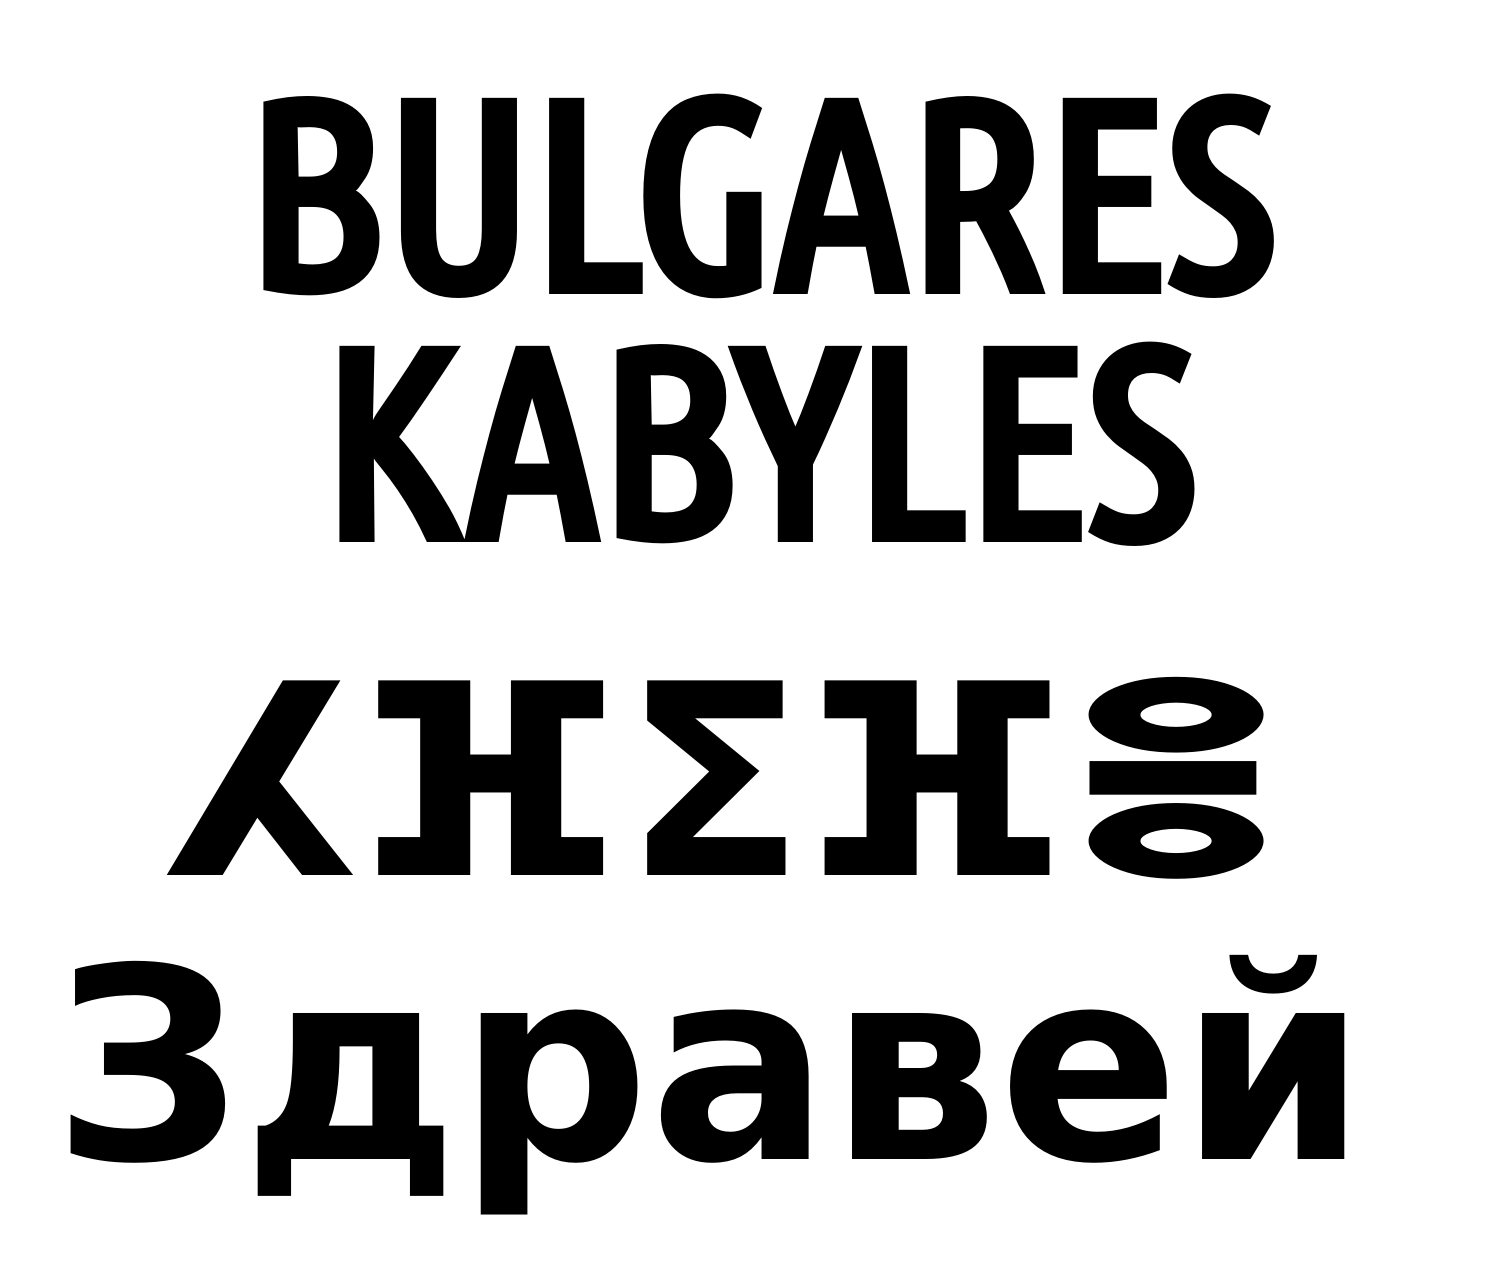 Les Kabyles ont des origines bulgares: info ou intox ?